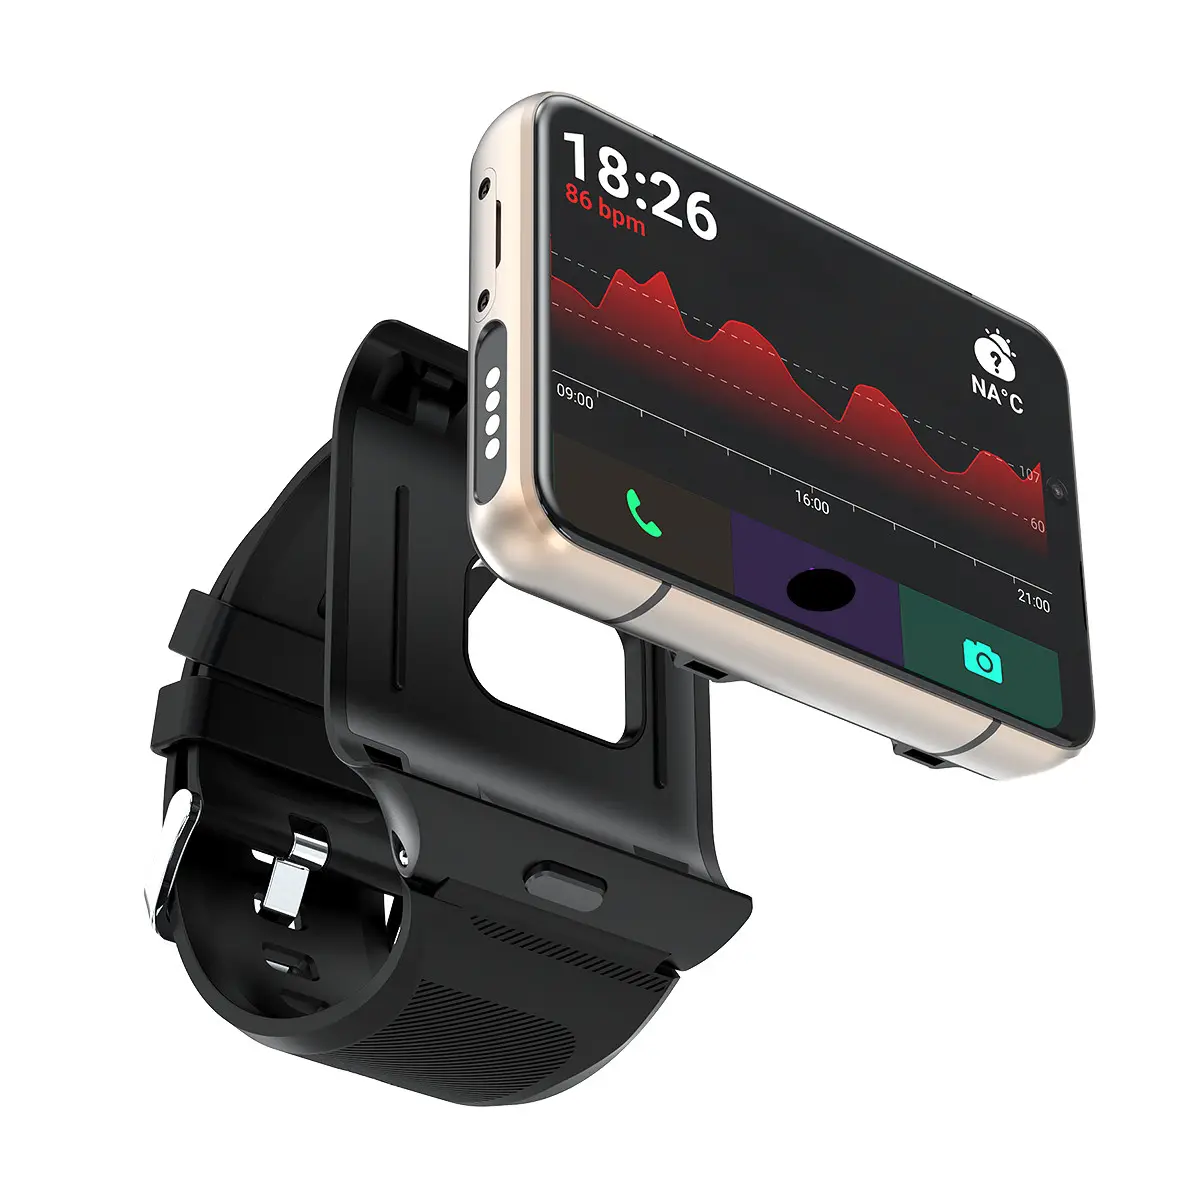 Oem S999 thông minh đồng hồ, máy ảnh kép 2300mAh pin 2.88 "HD màn hình lớn Sim Thẻ Thông Minh 4 gam Điện thoại đồng hồ cho Android thông minh đồng hồ